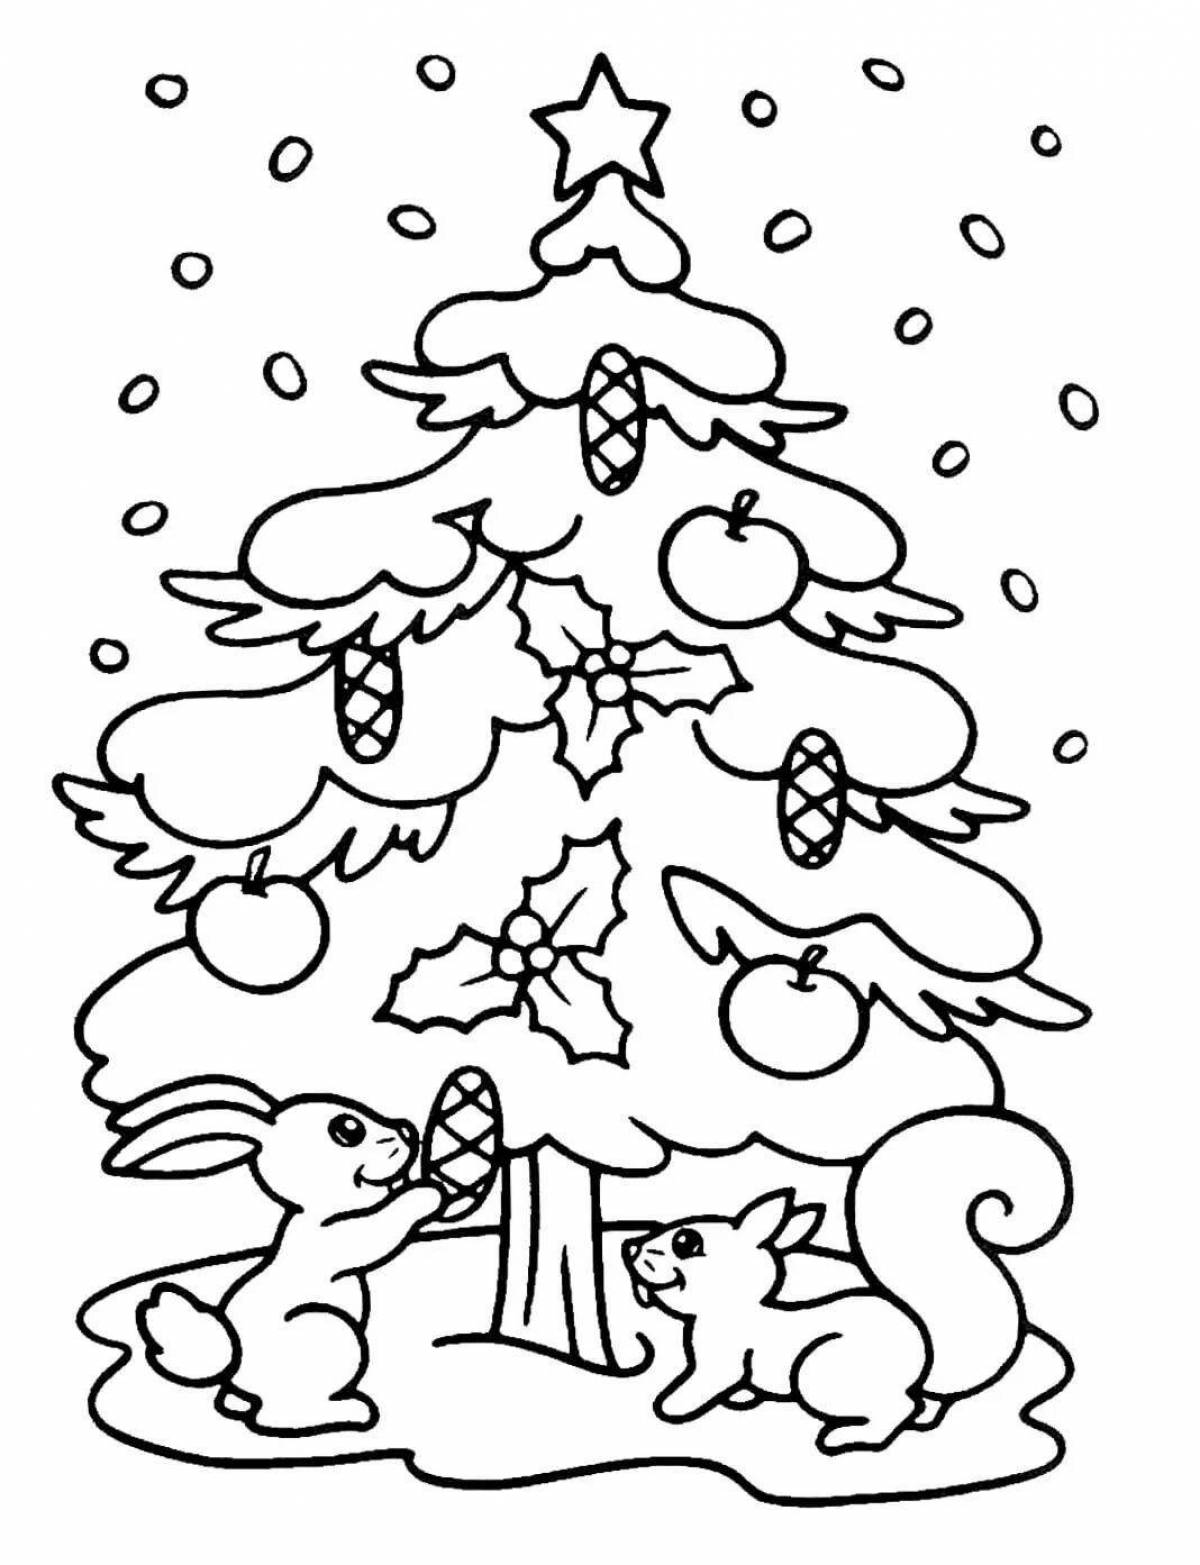 Живая раскраска рождественской елки для детей